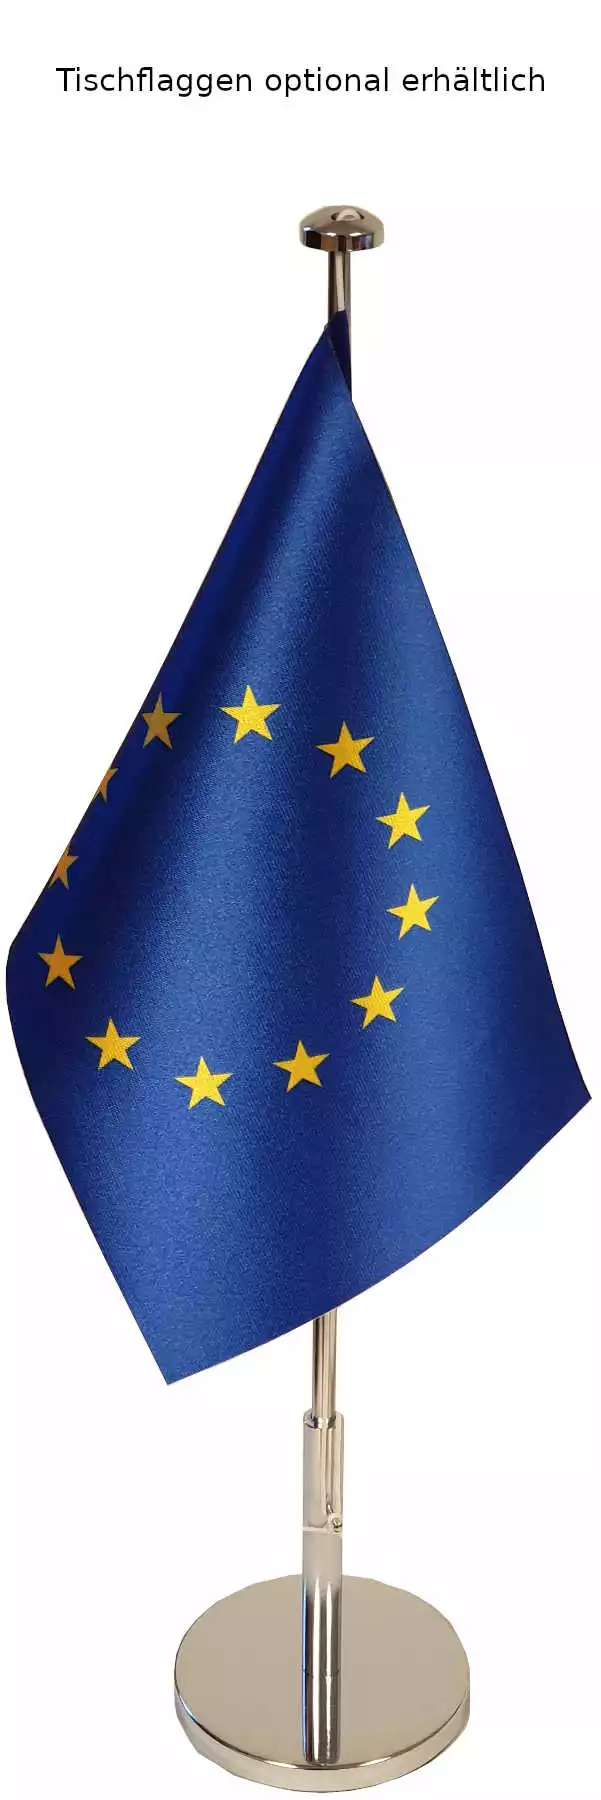 Tischflaggen-/bannerständer Chrom teleskopierbar Flachfuß komplett mit Tischflagge Europa